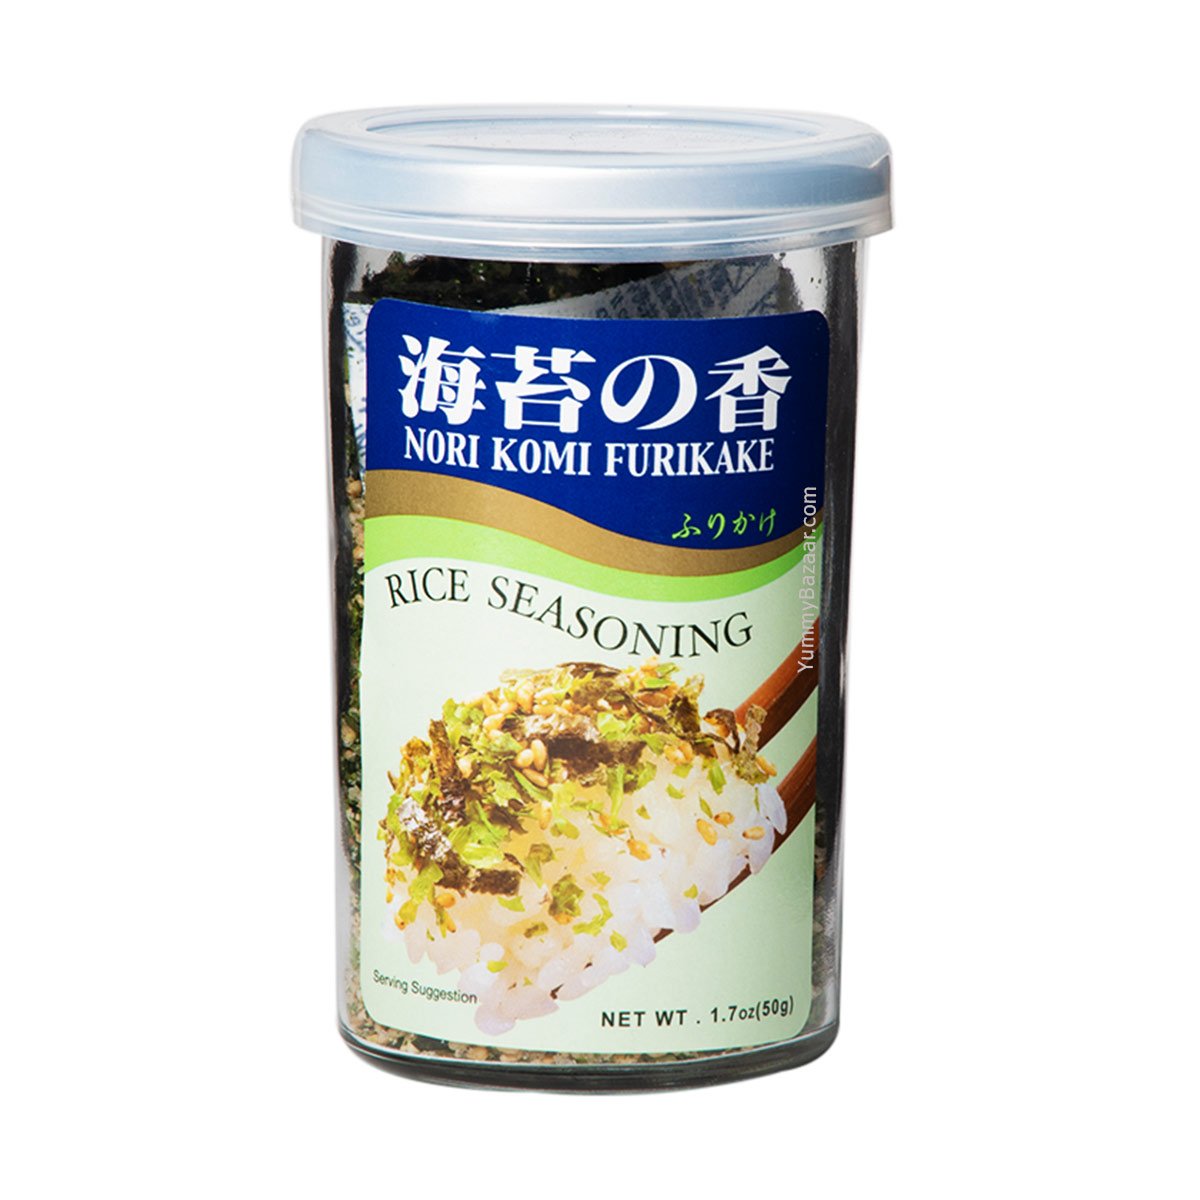 Japanese Furikake Rice Seasoning Nori Komi by Ajishima, 1.7 oz (50 g)